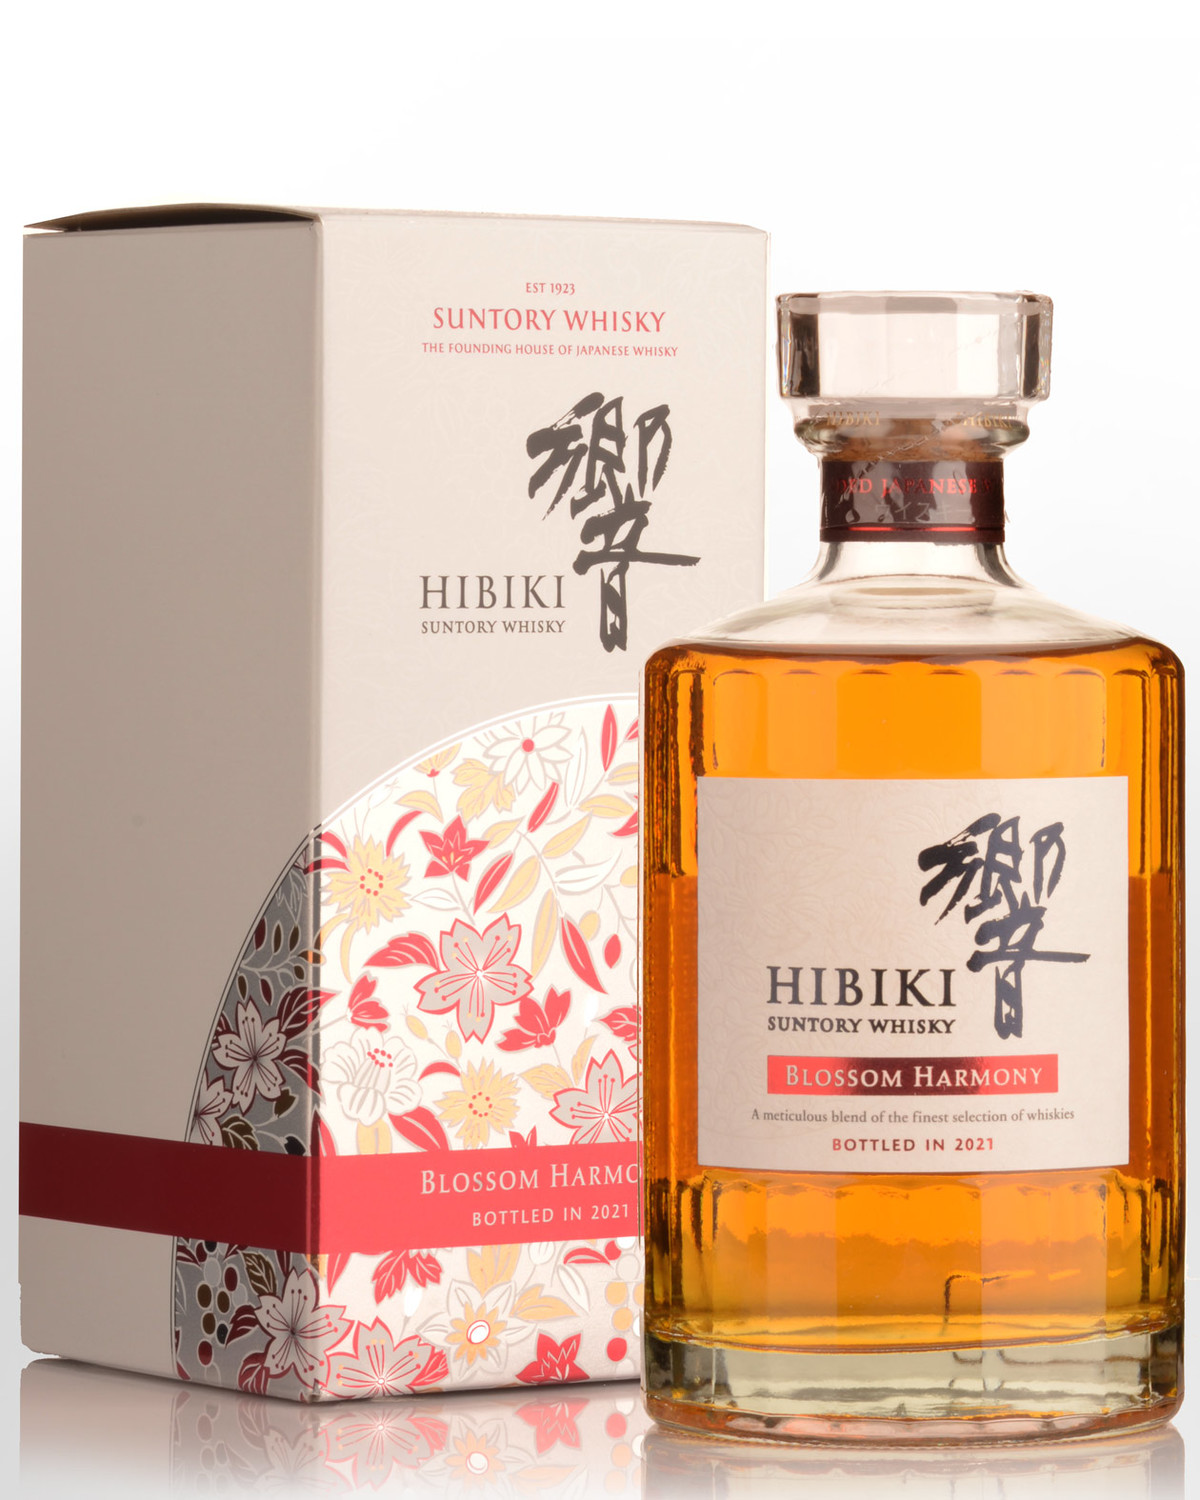 Suntory Hibiki Blossom Harmony Blended Japanese Whisky (700ml